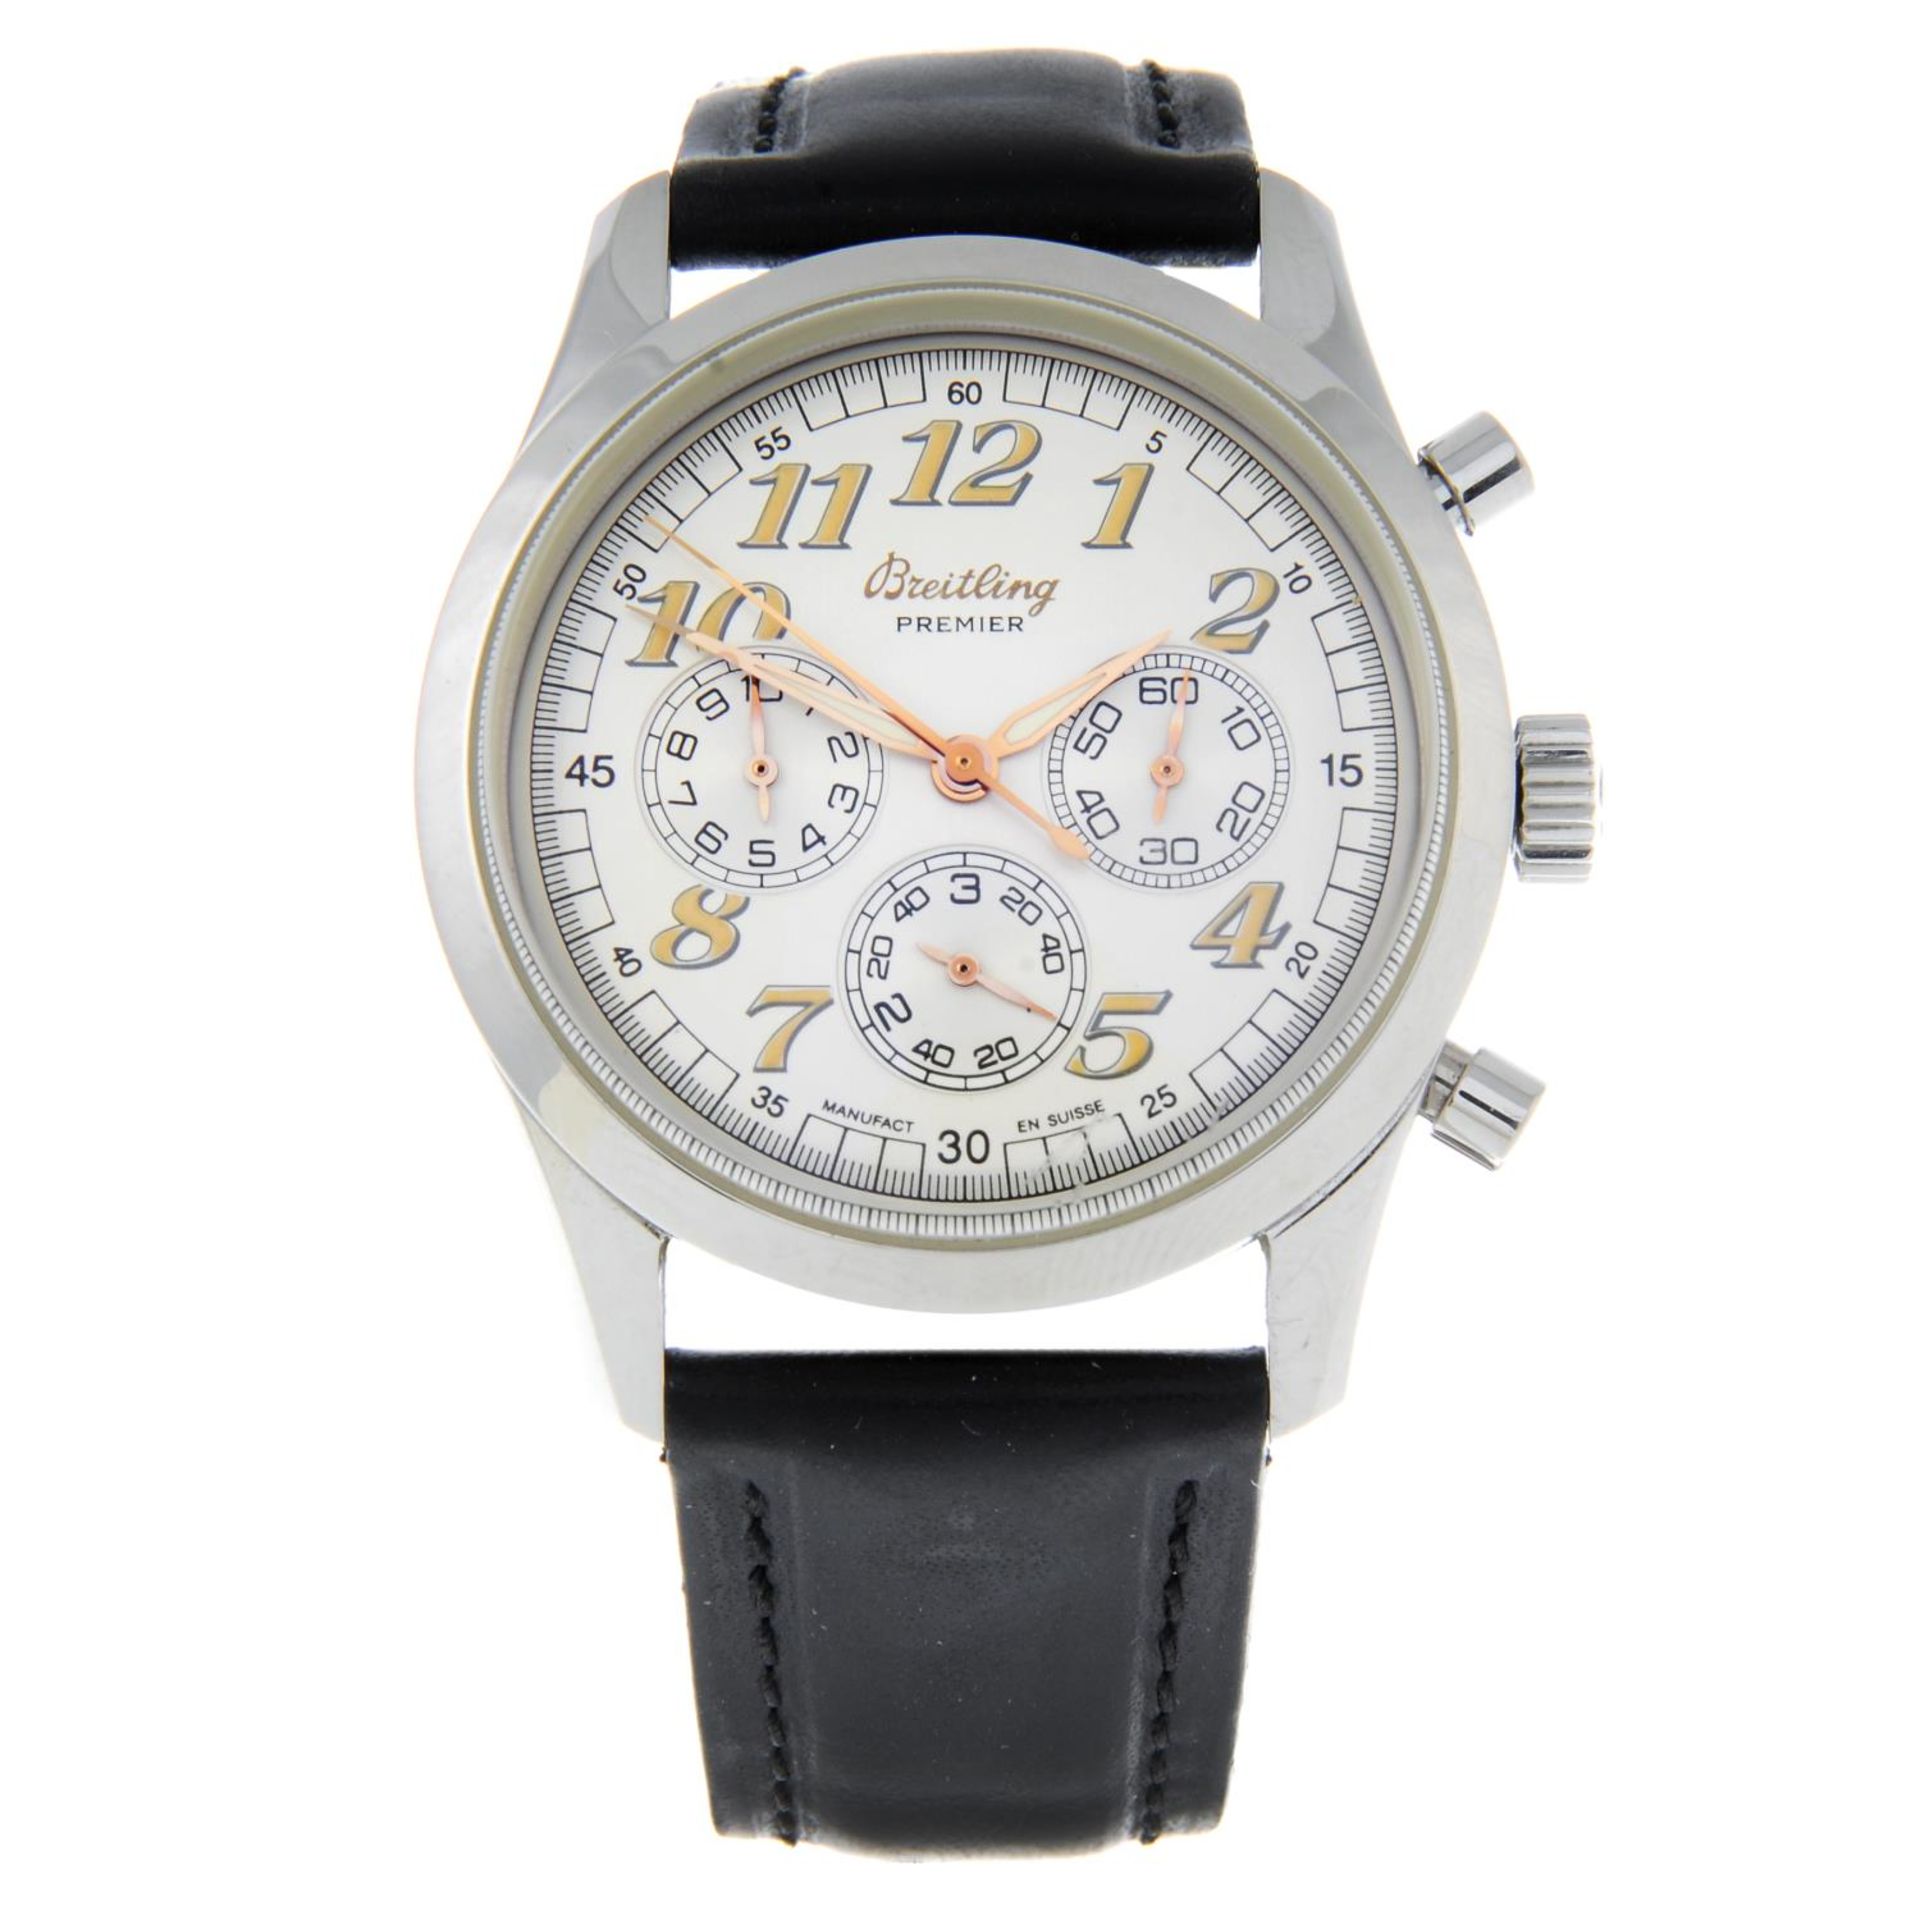 BREITLING - a gentleman's Navitimer Premier chronograph wrist watch.